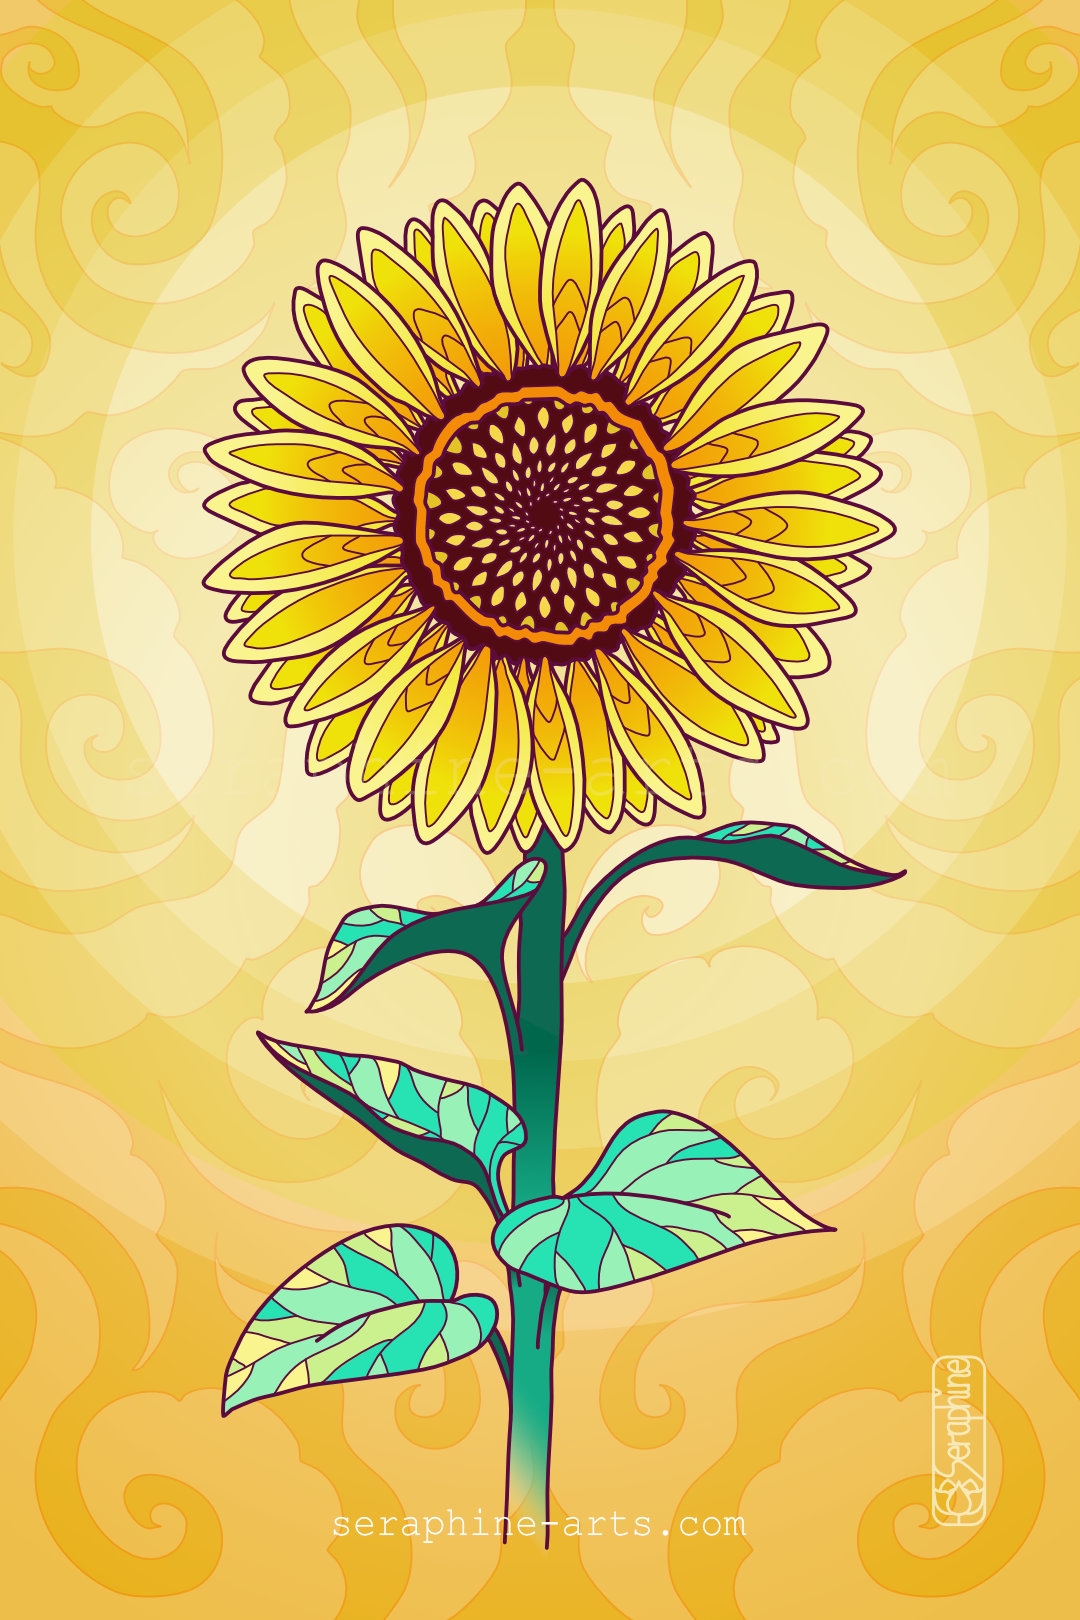 images/sunflower.jpg